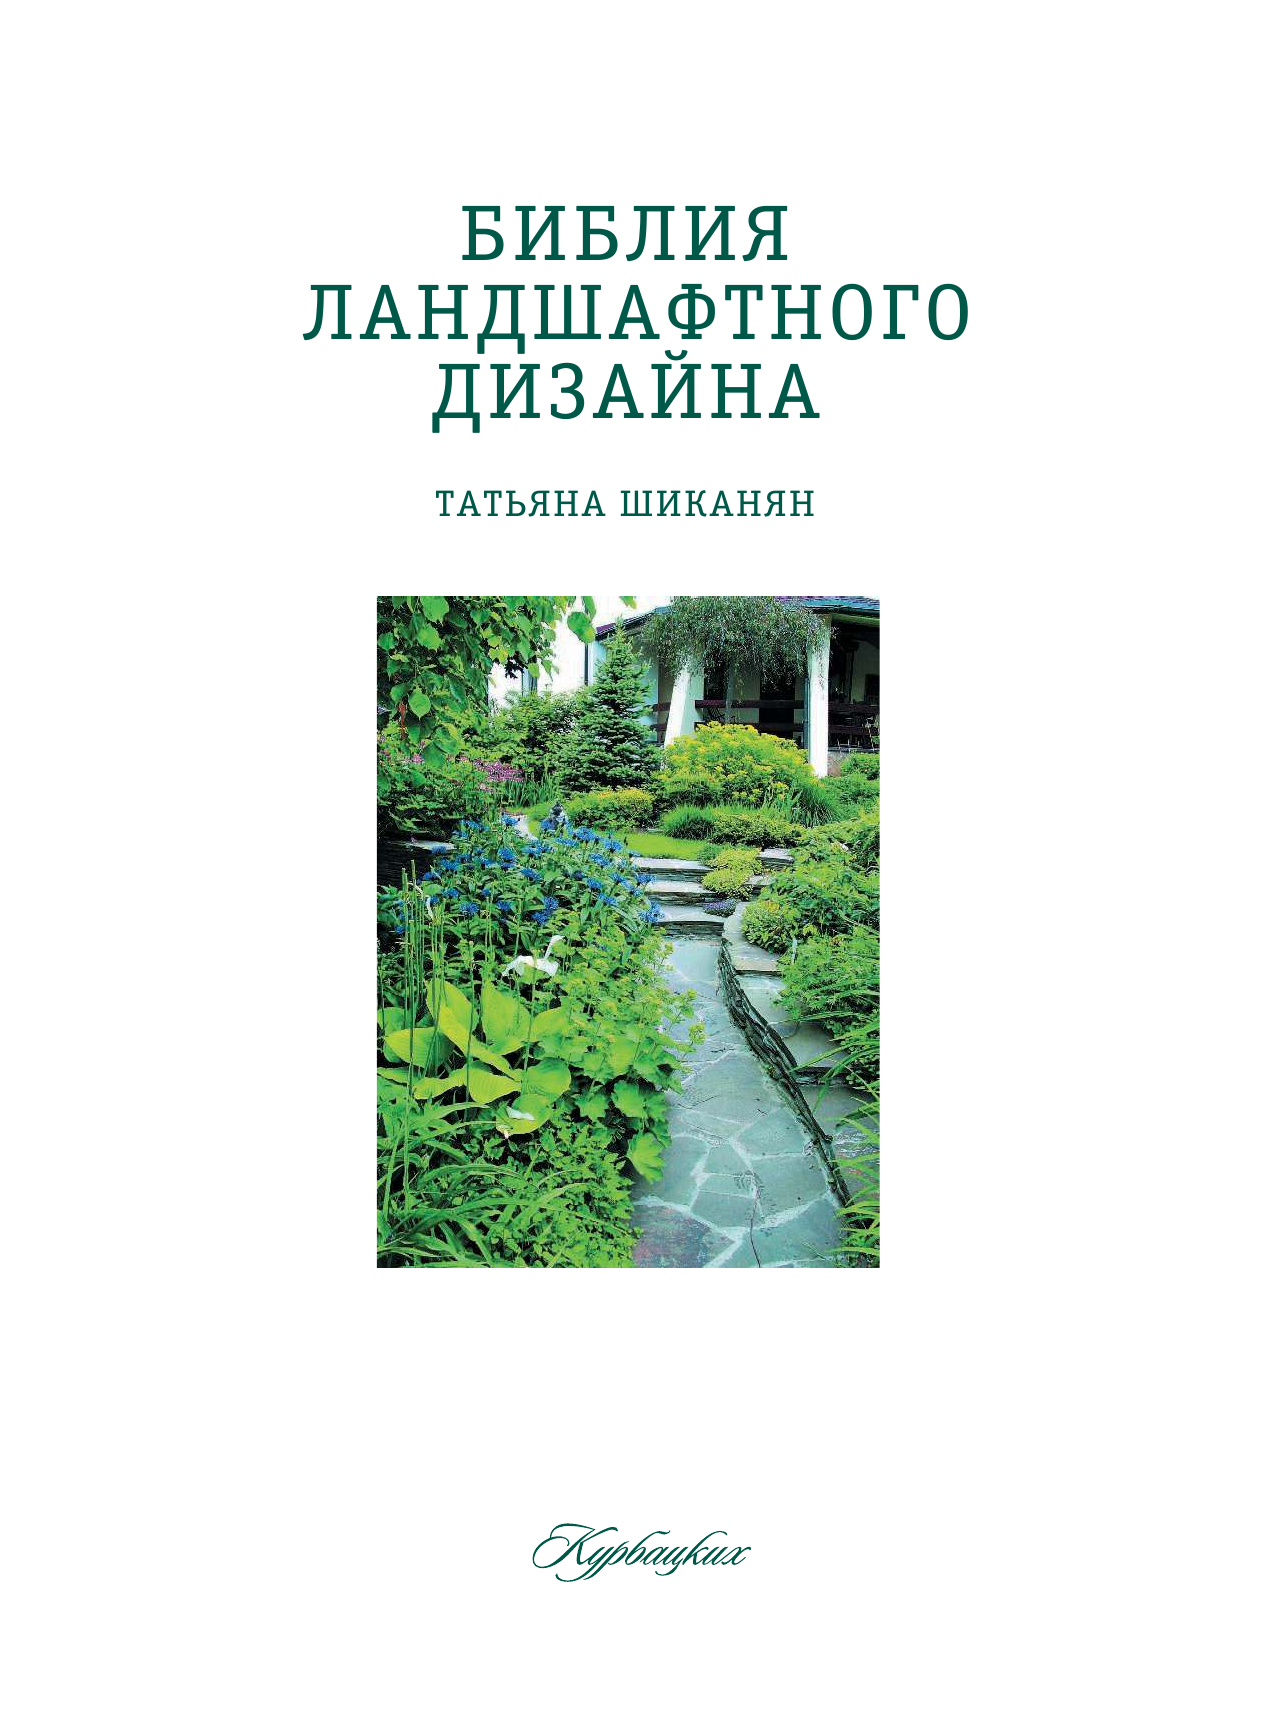 Шиканян Татьяна Дмитриевна Библия ландшафтного дизайна - страница 1